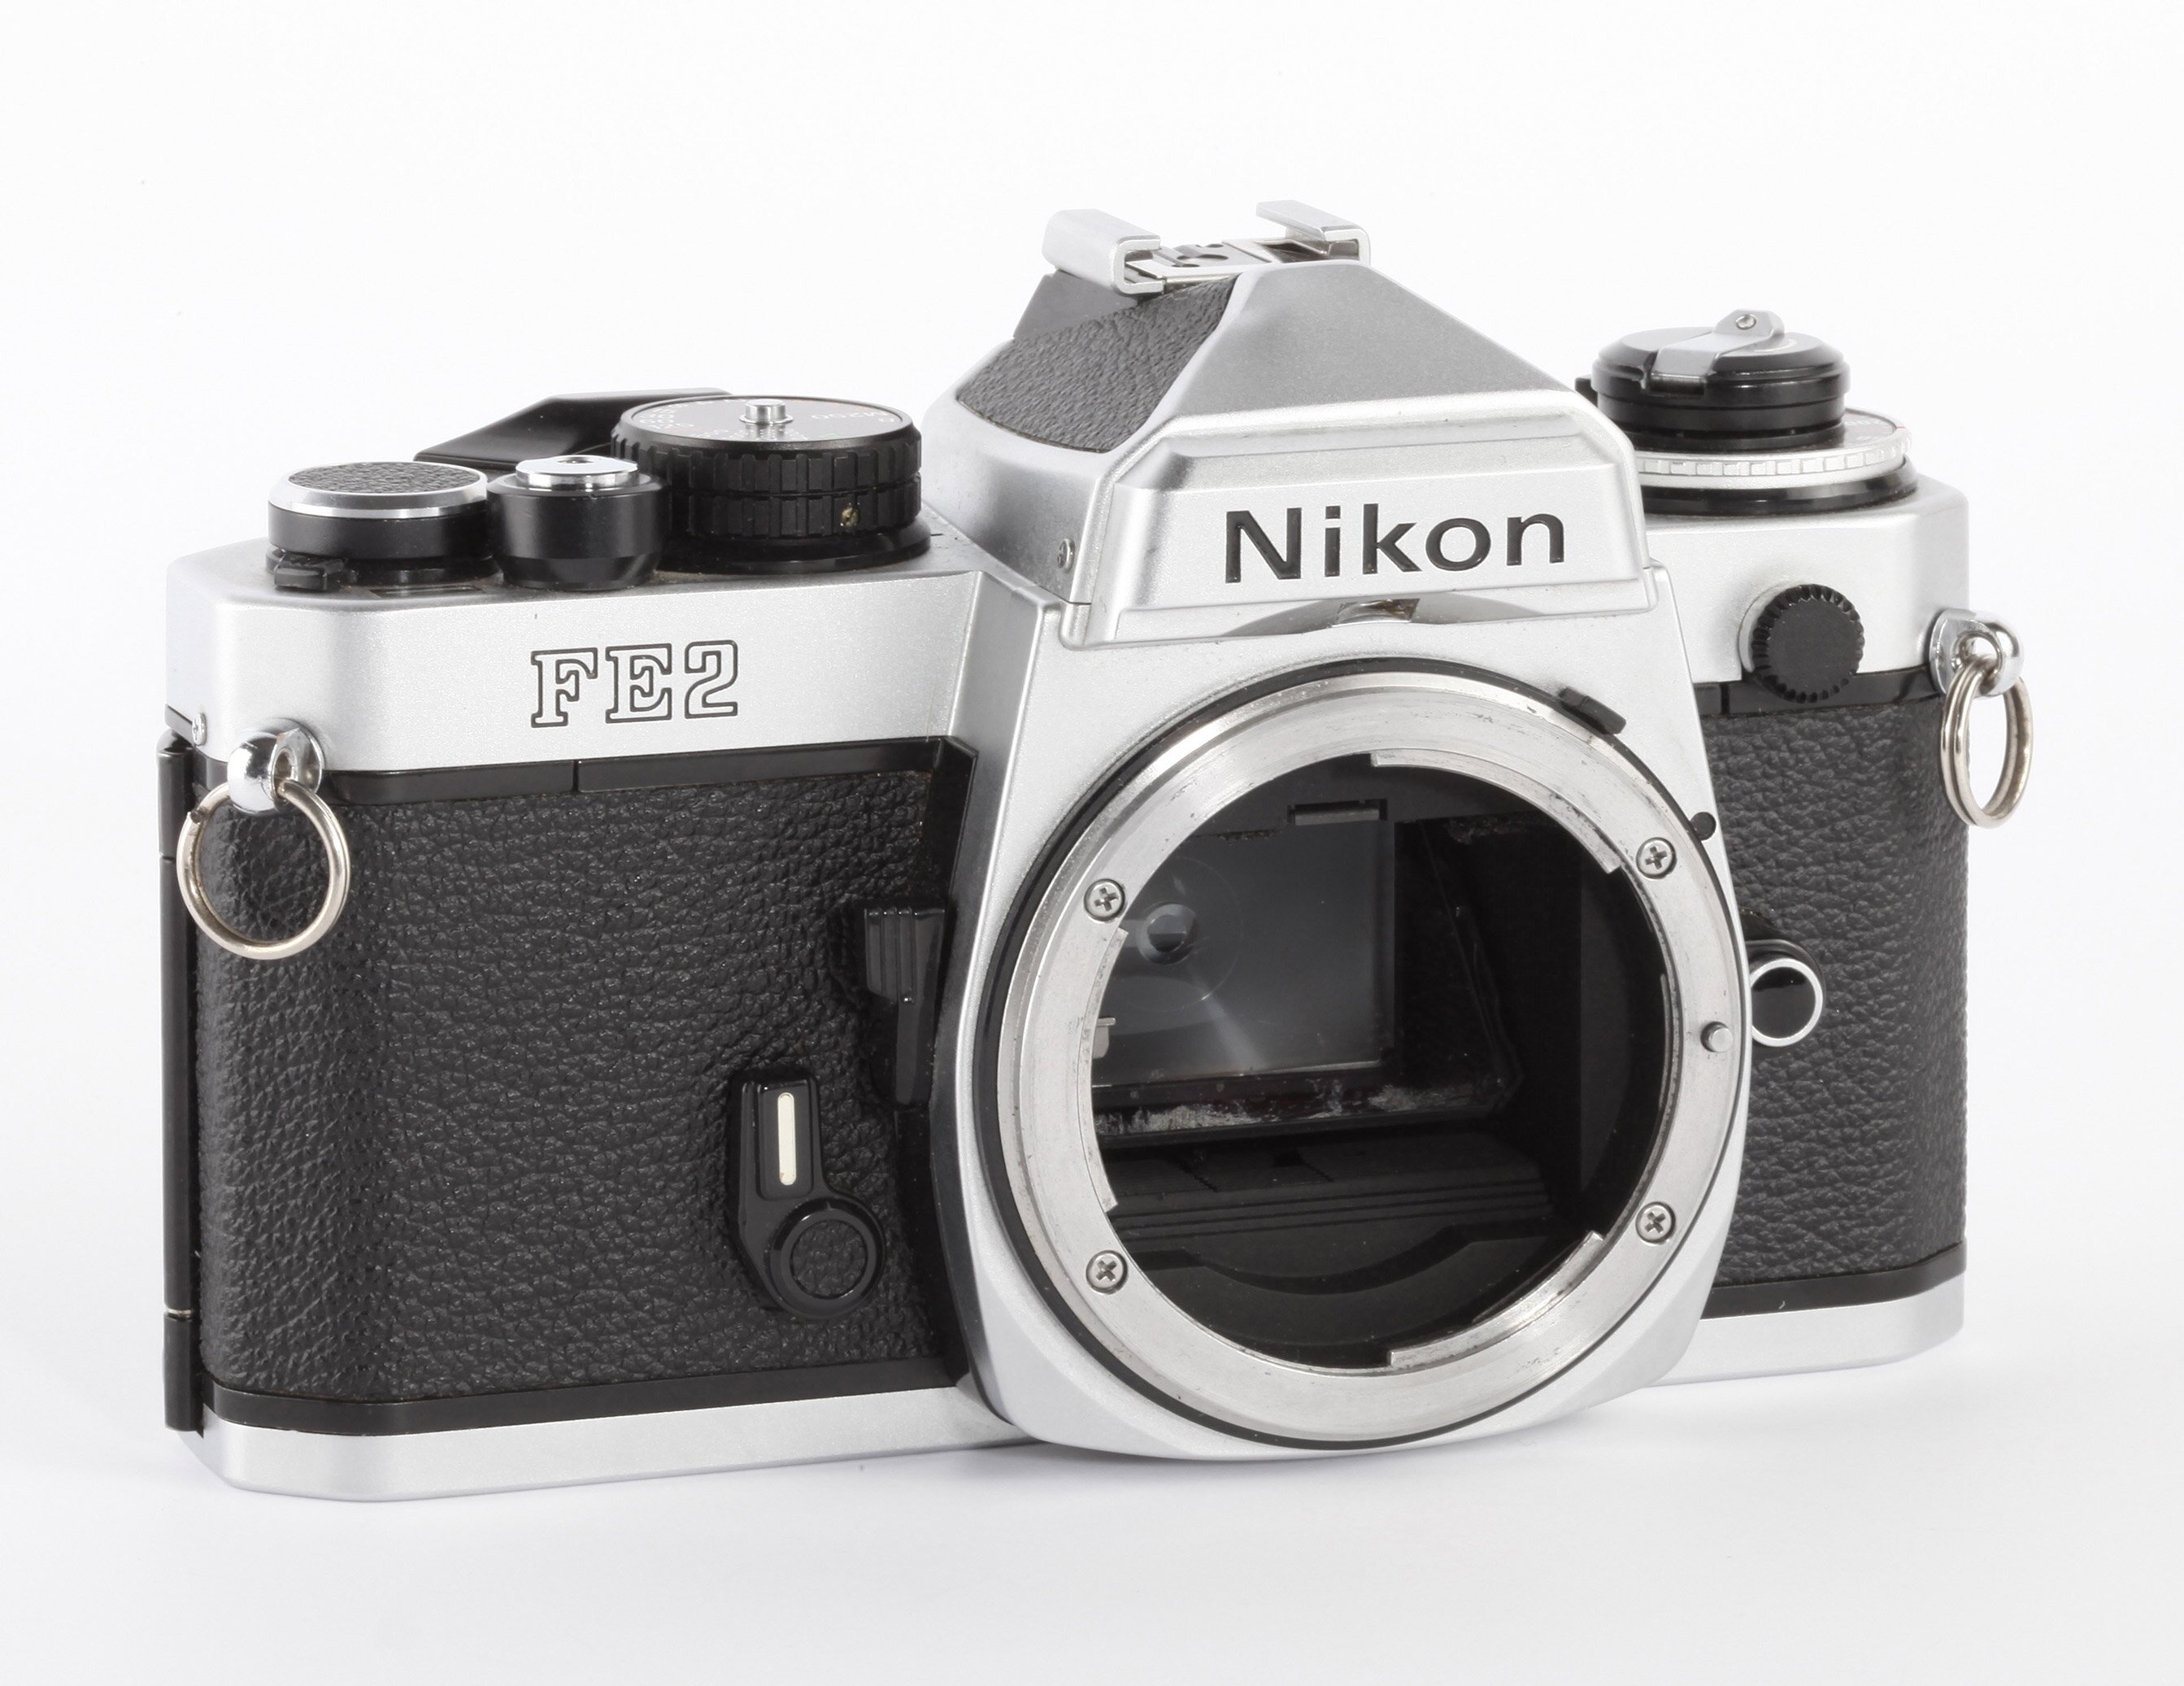 Nikon FE2 chrom